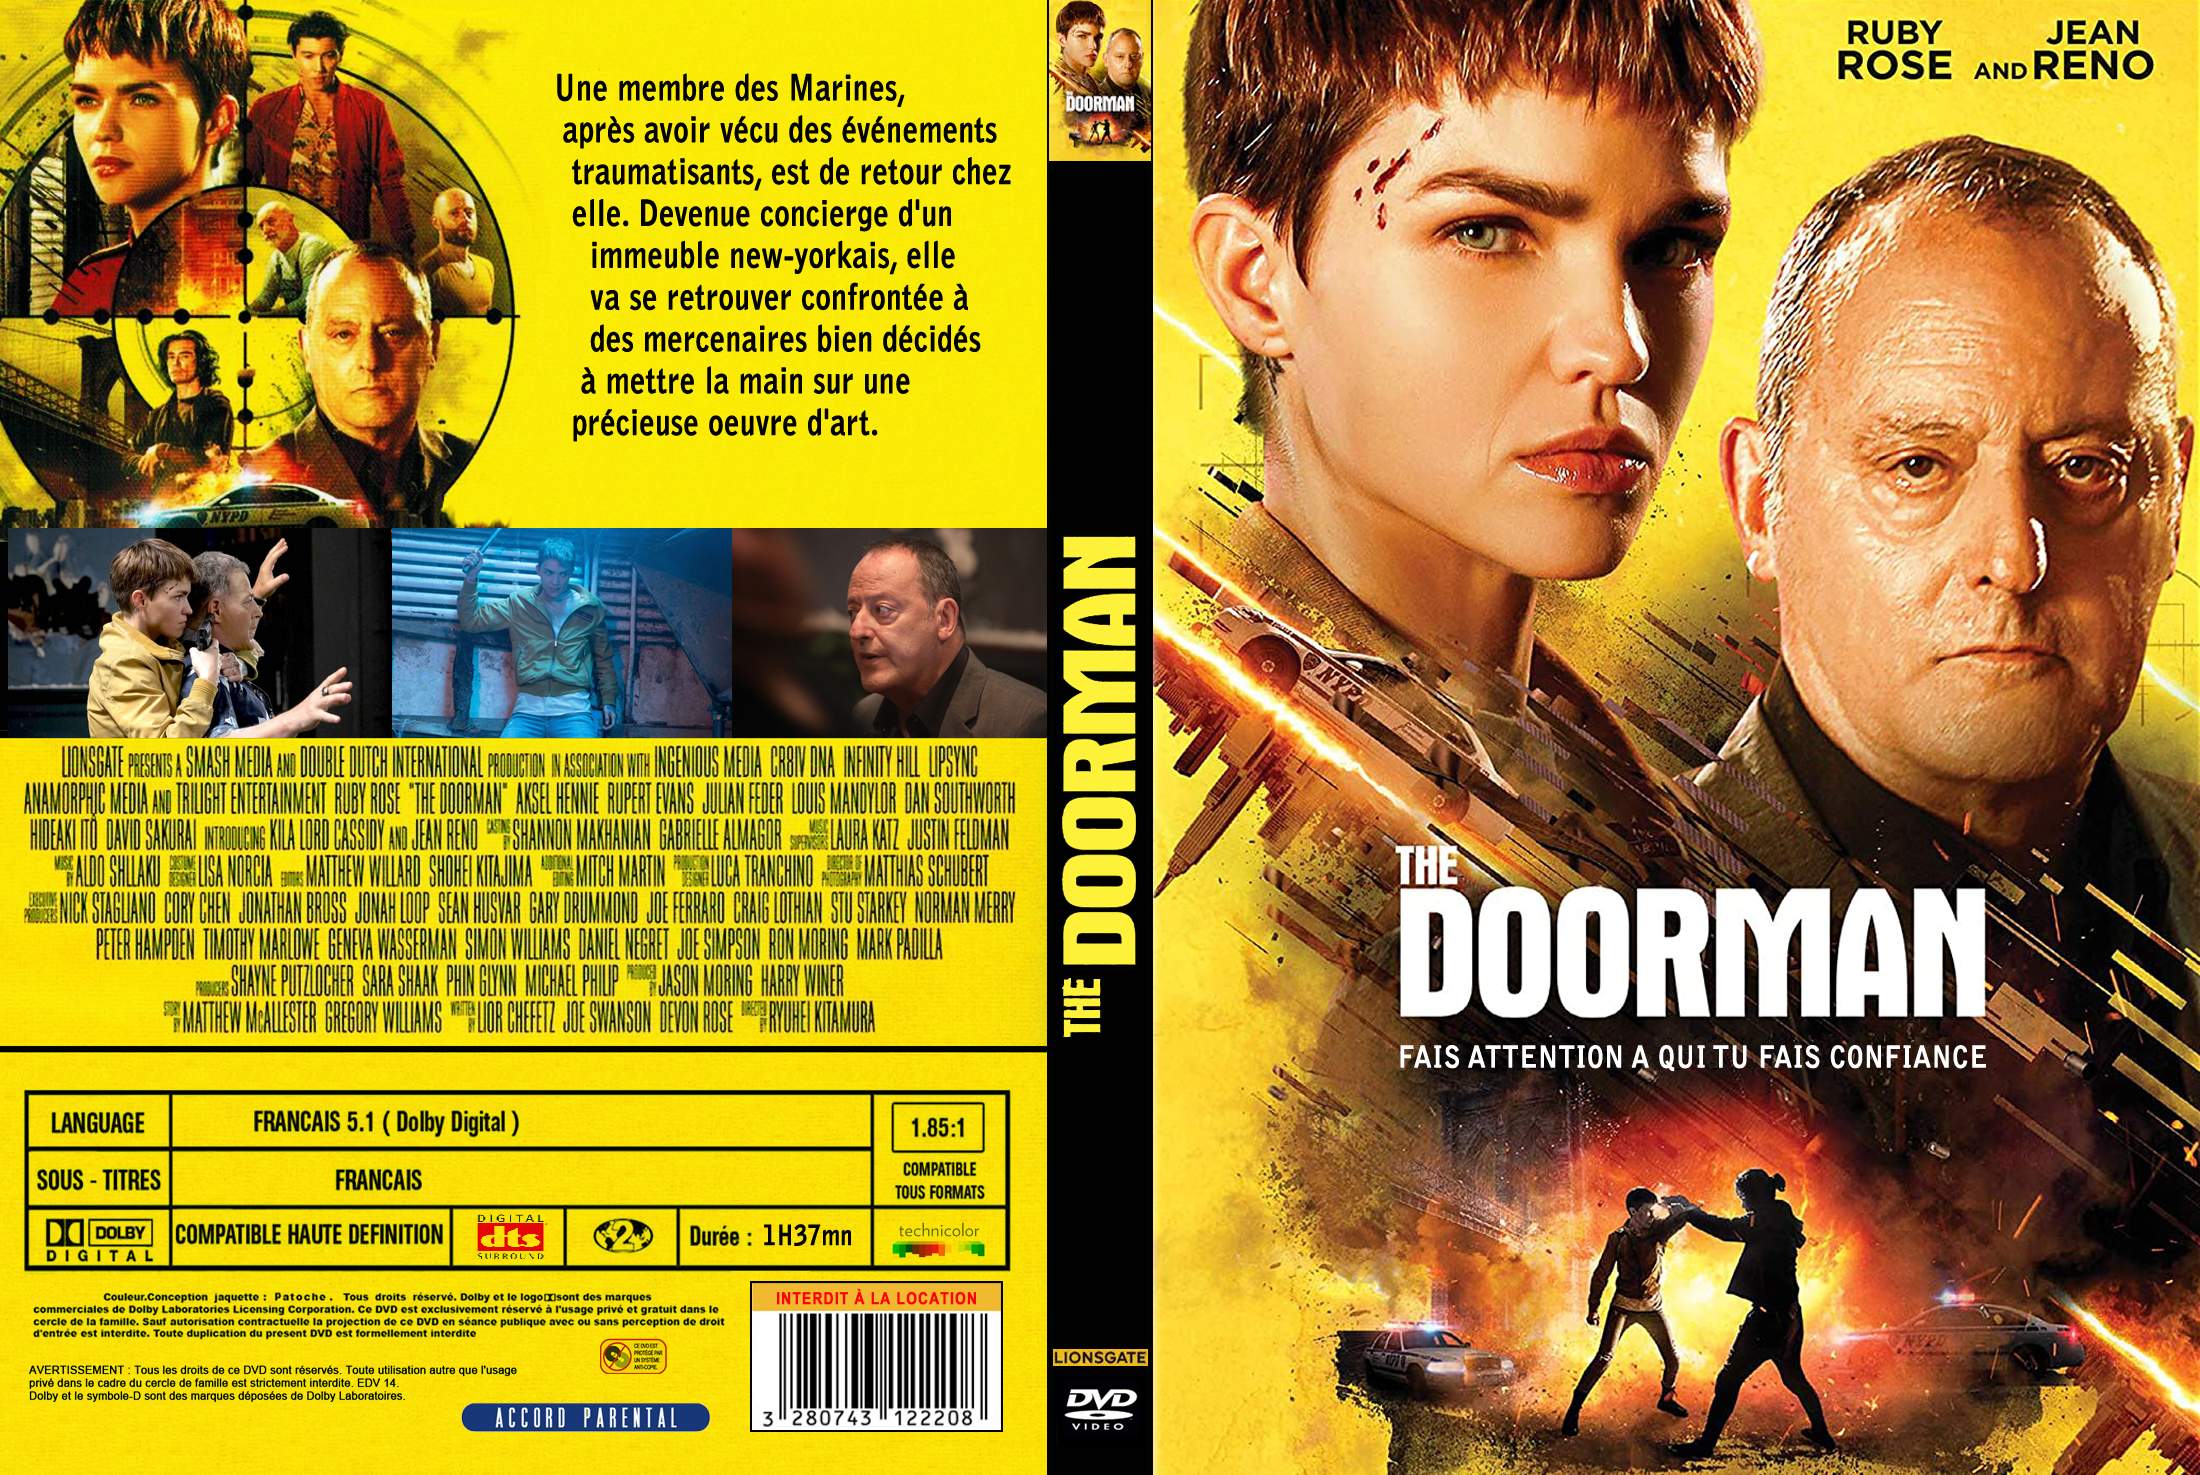 Jaquette DVD The Doorman custom